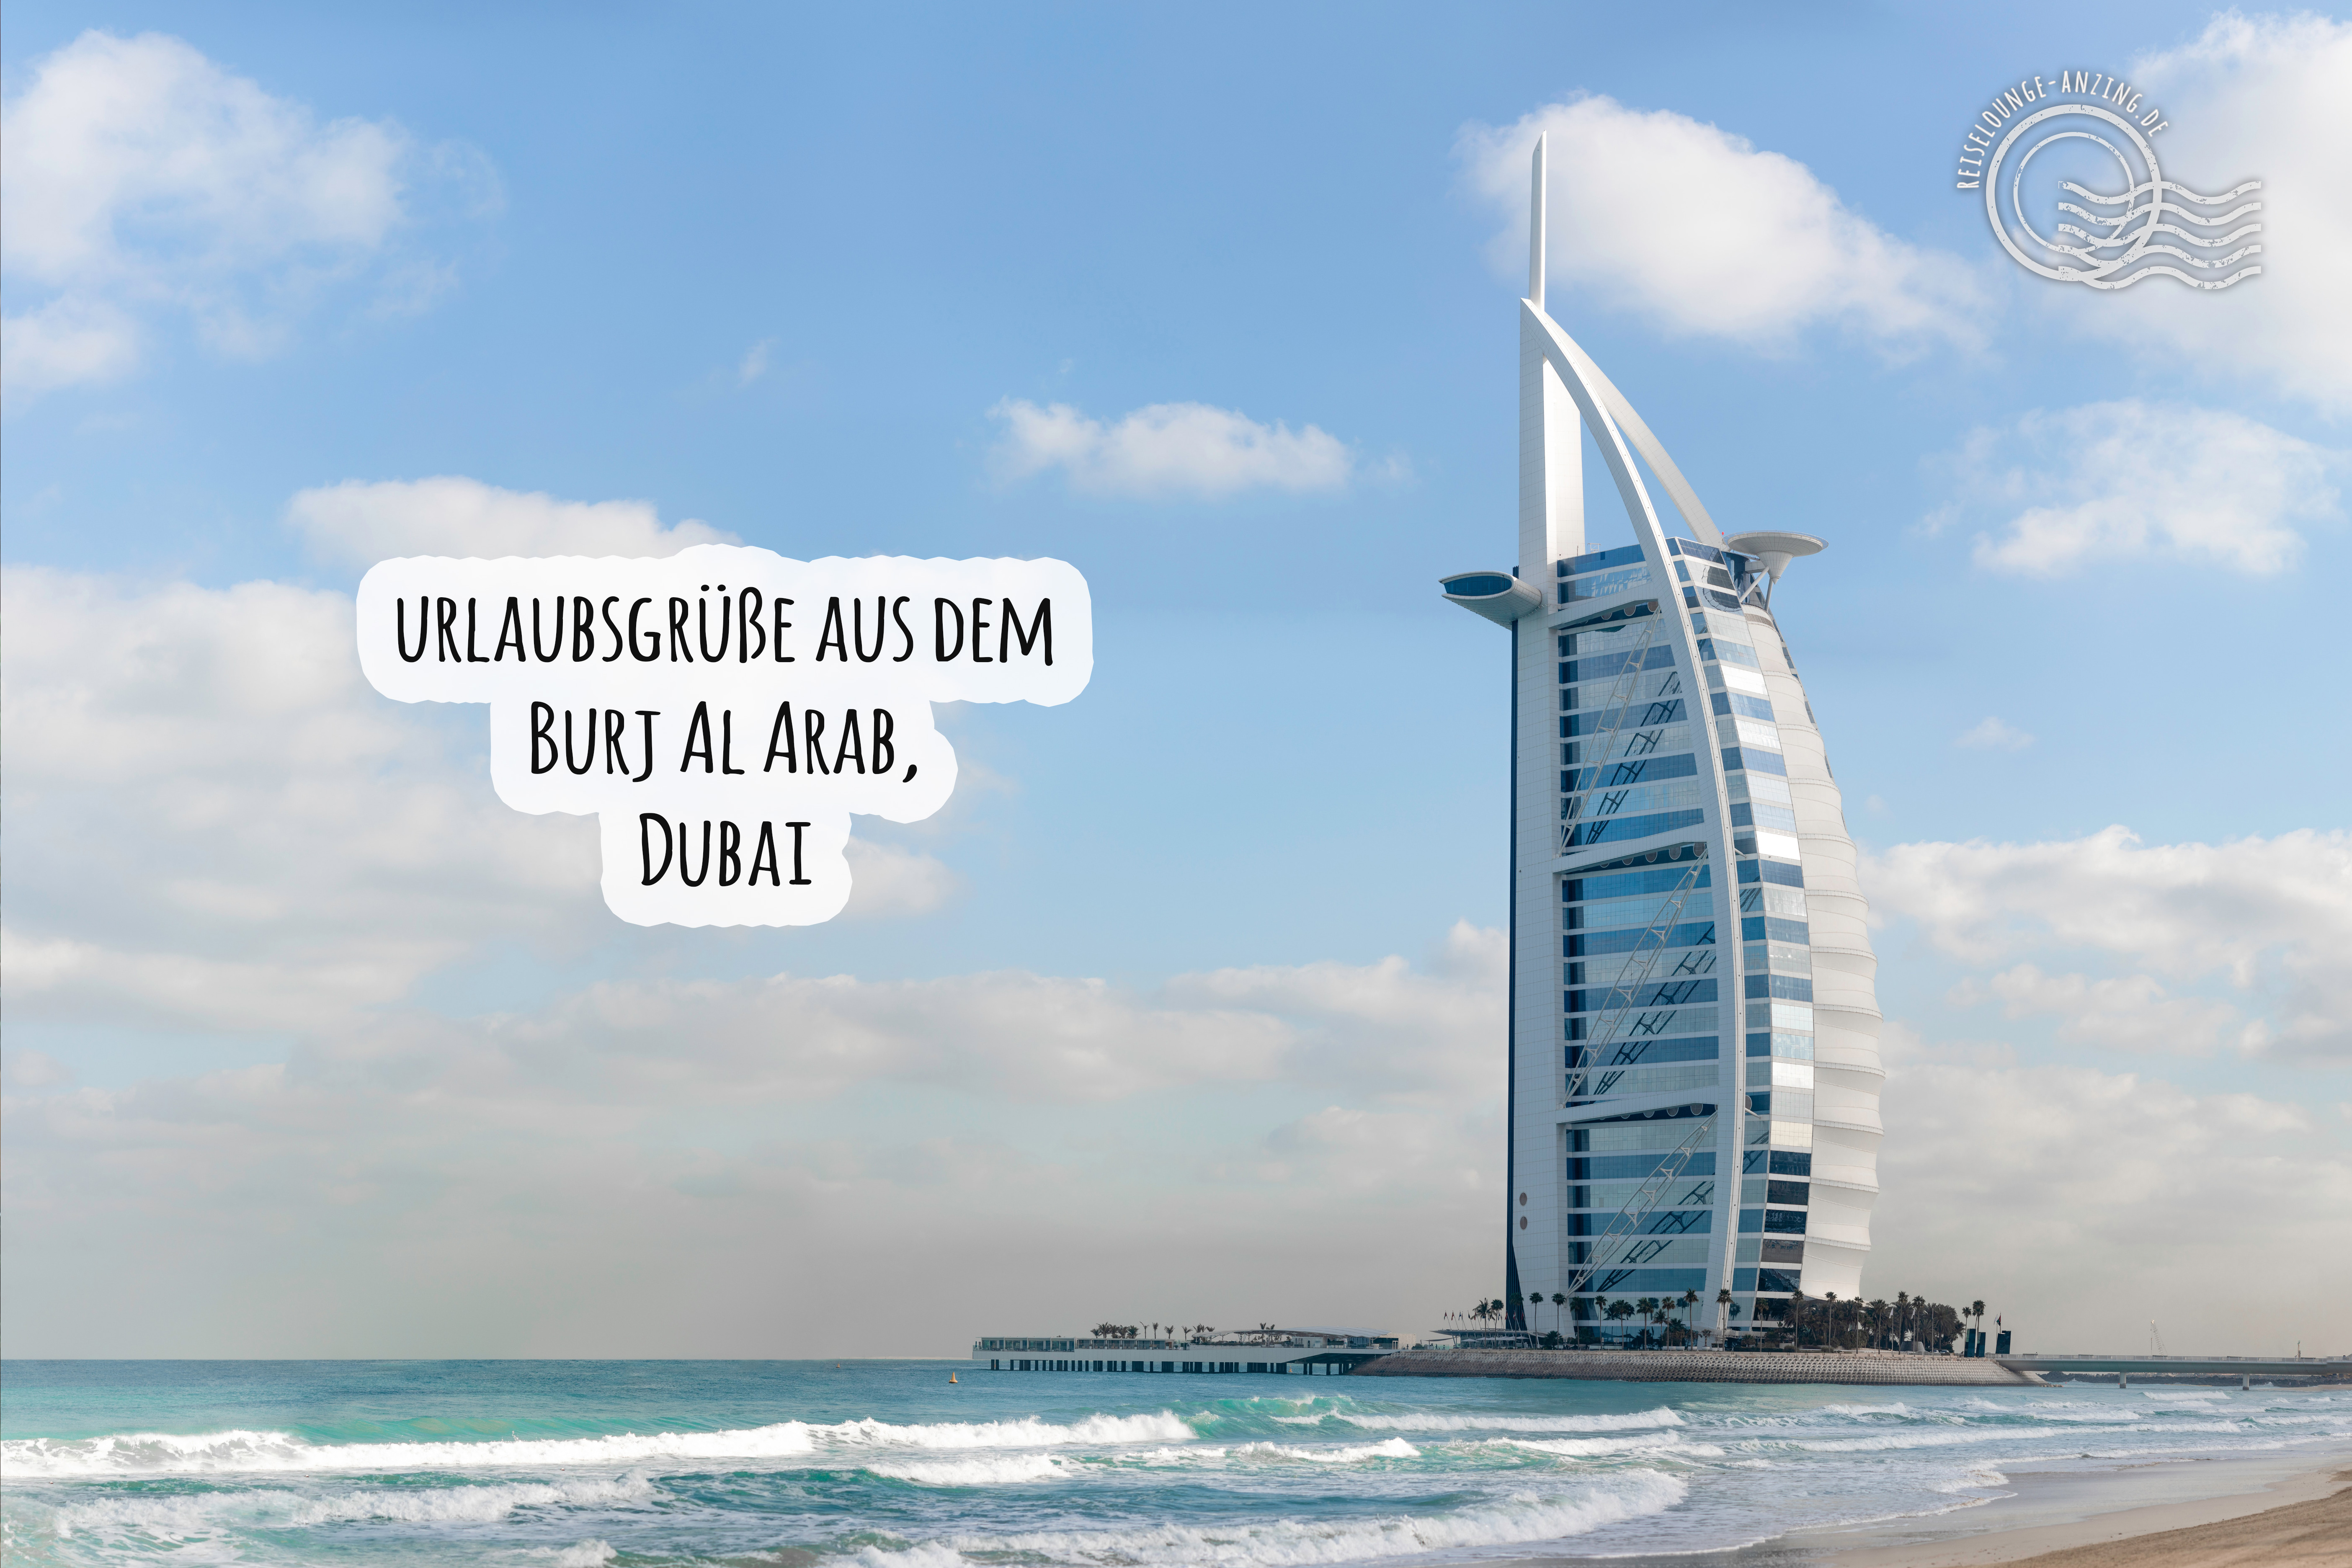 Urlaubsgüße aus Dubai